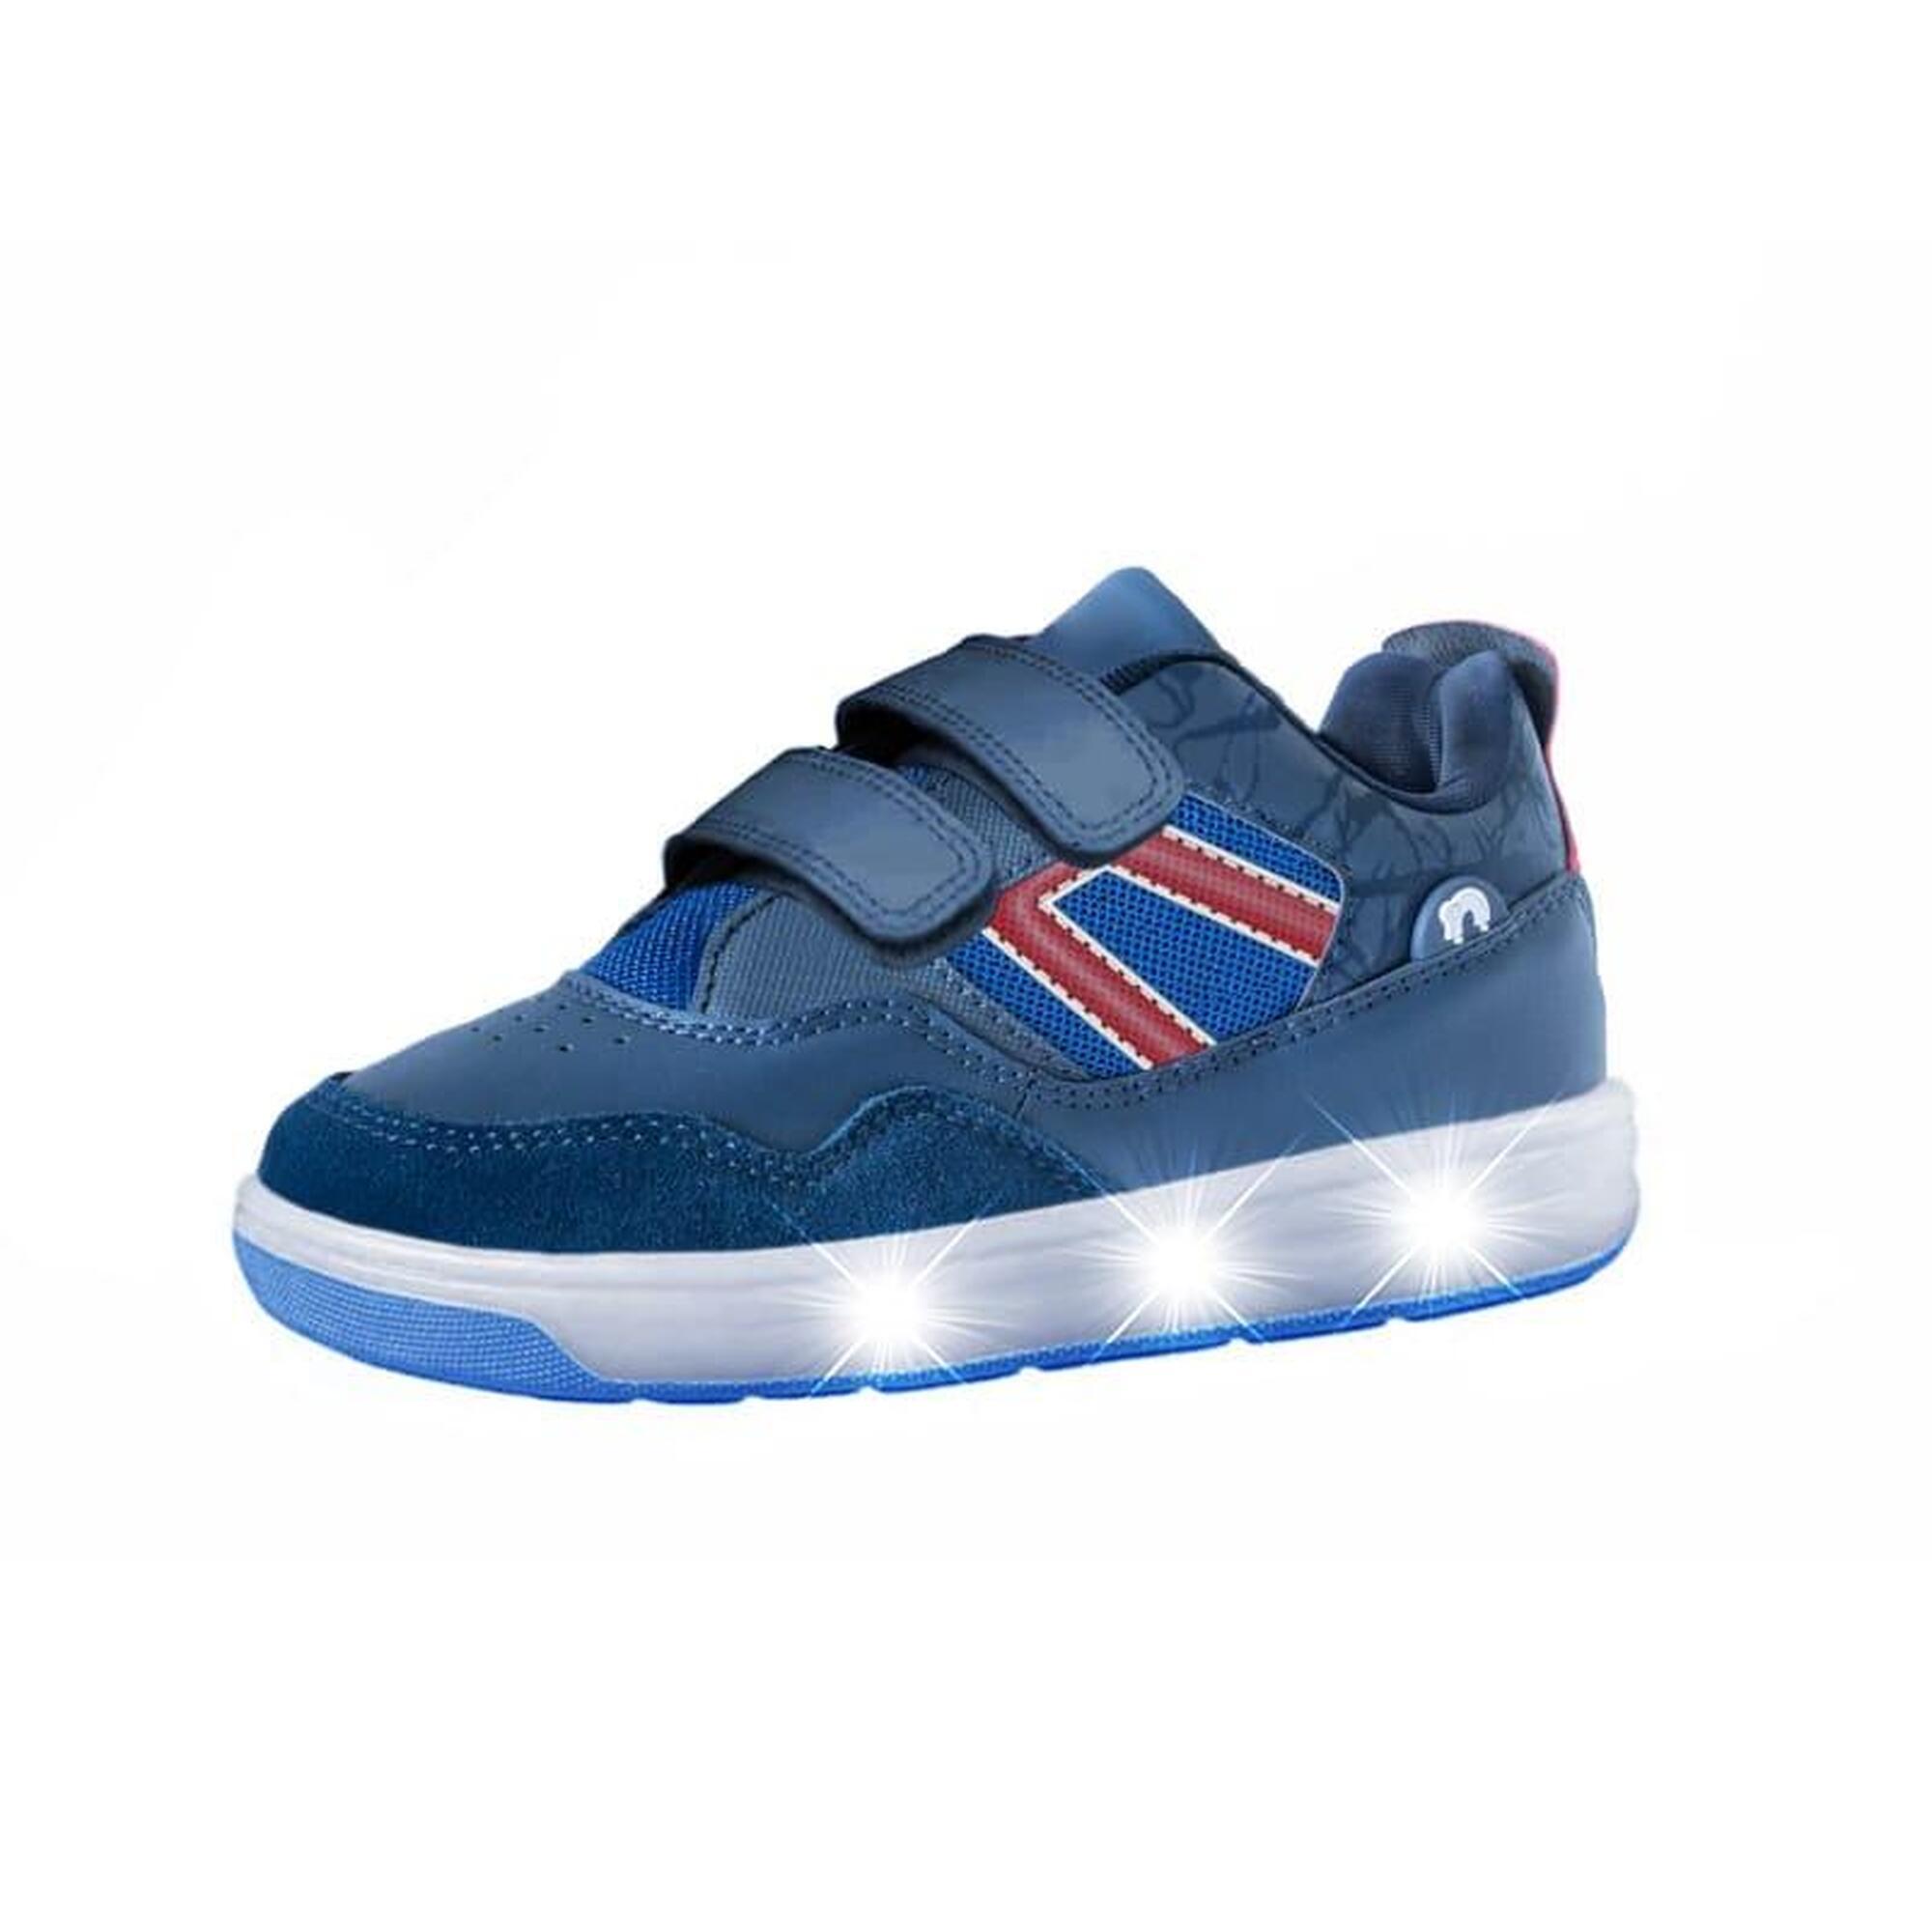 Zapatillas con Ruedas LED niños Breezy Rollers 2196090 azul marino rojo